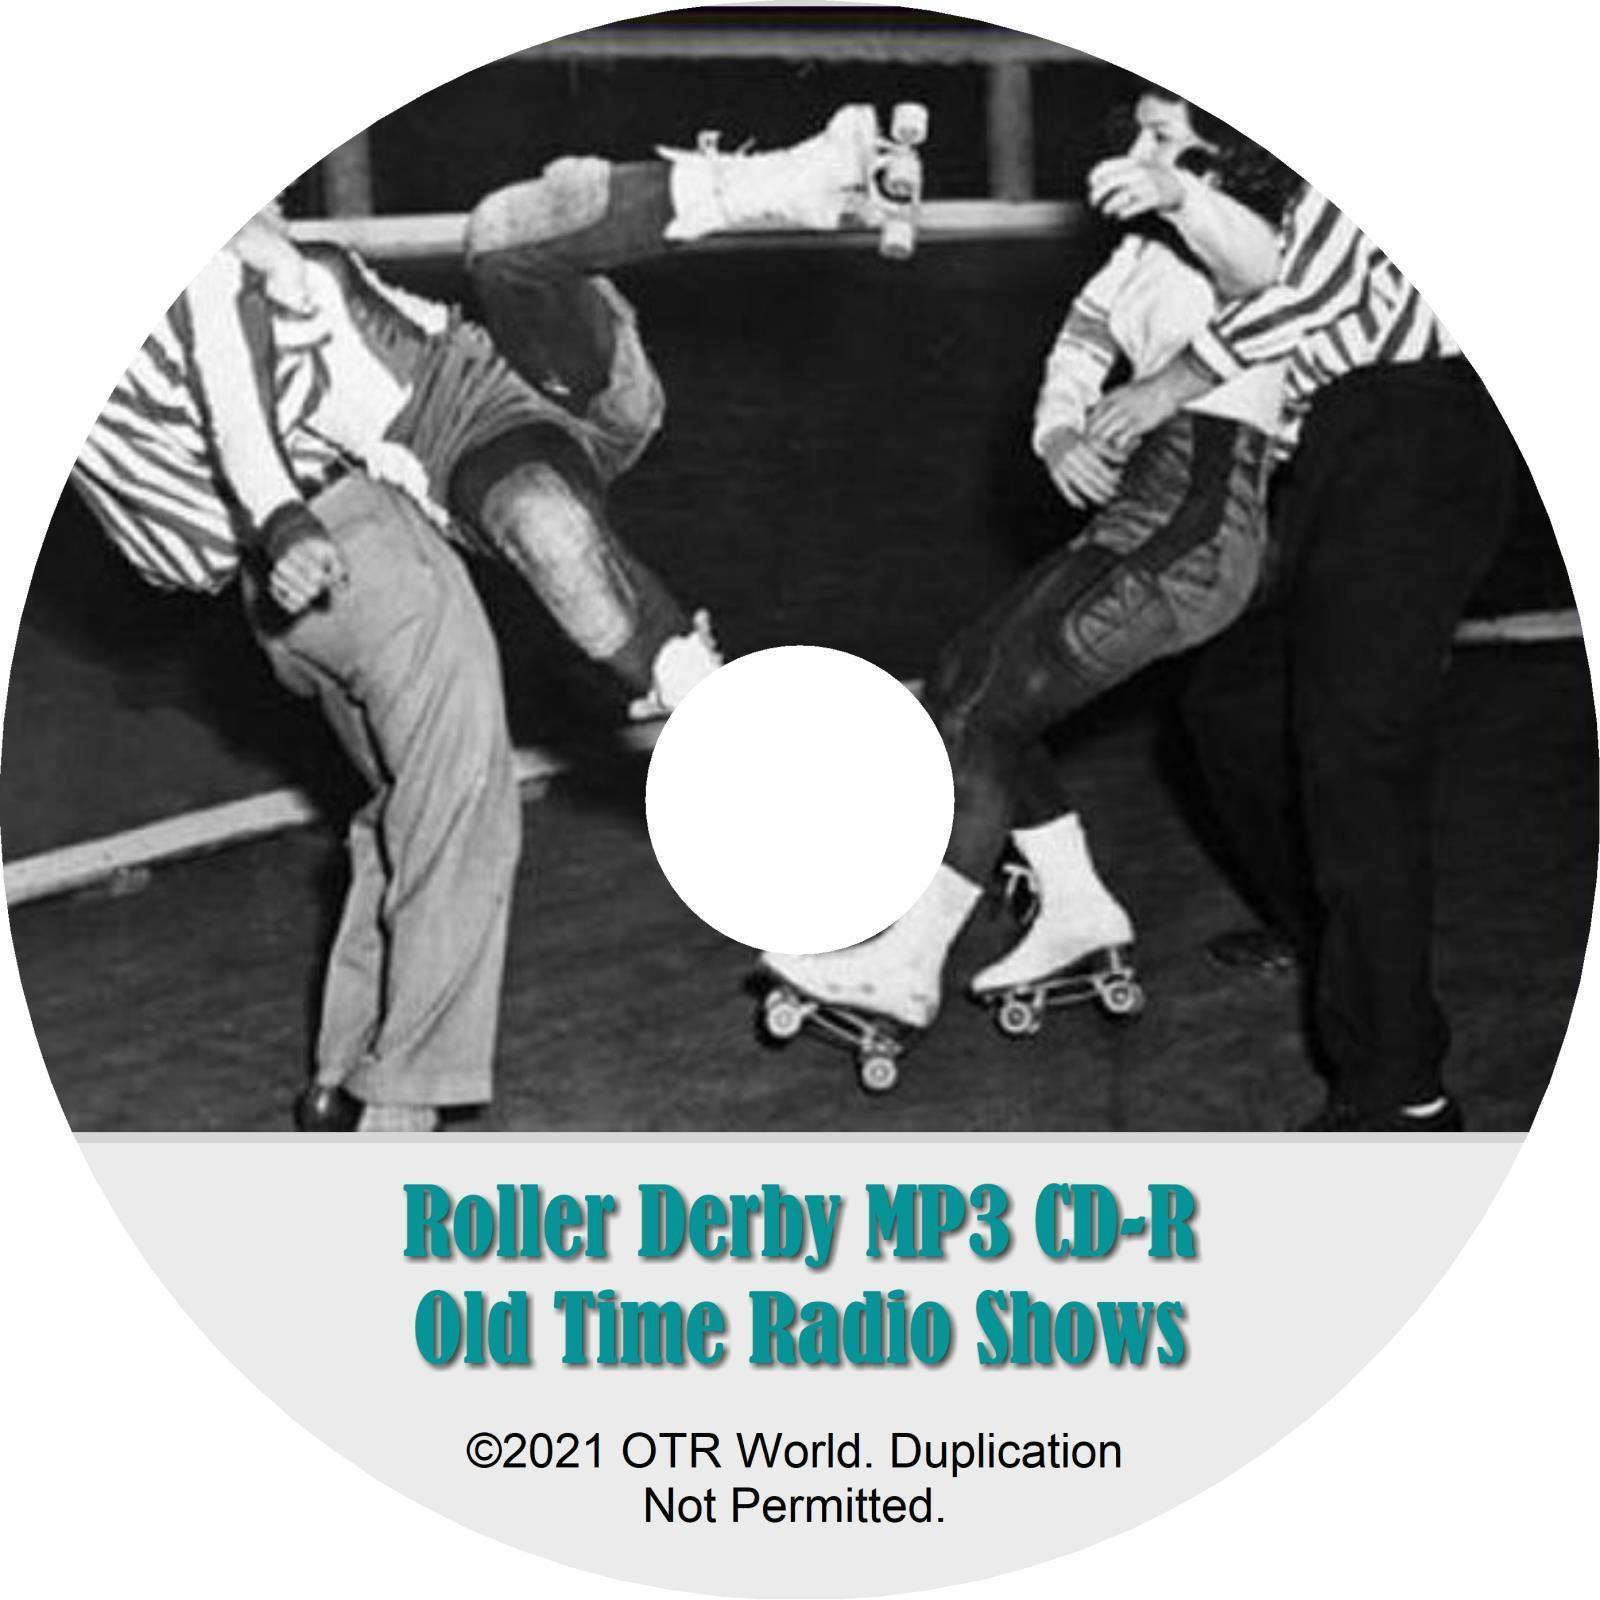 Roller Derby OTR OTRS Old Time Radio Shows MP3 On CD-R 2 Episode - OTR World